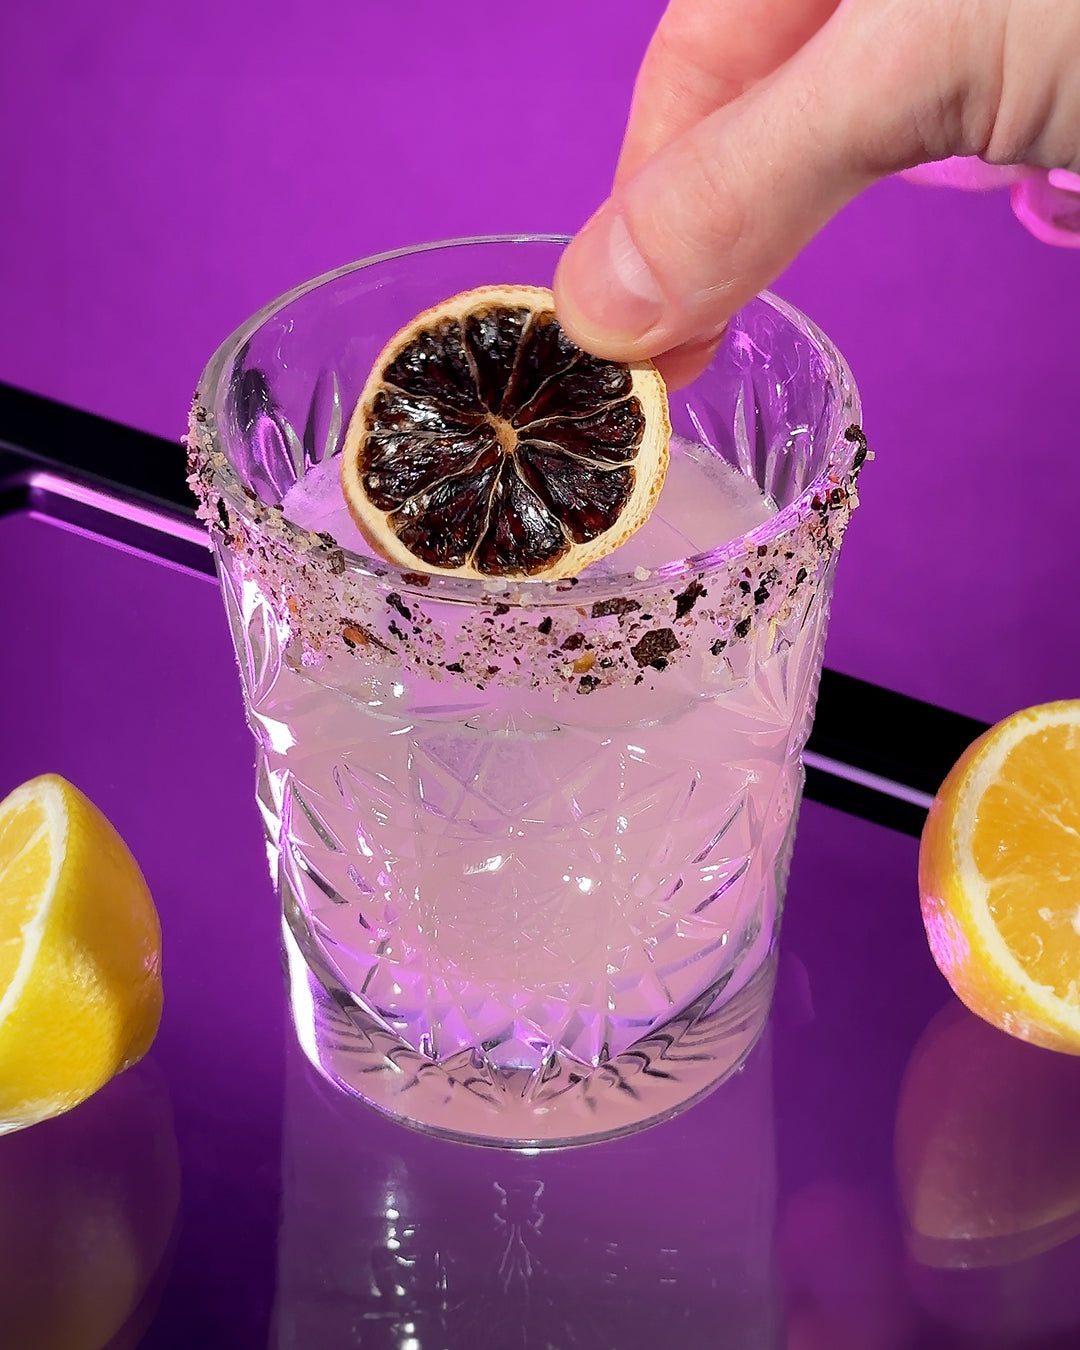 A hand placing a dried lemon wheel onto a Silencio mezcal margarita cocktail. 